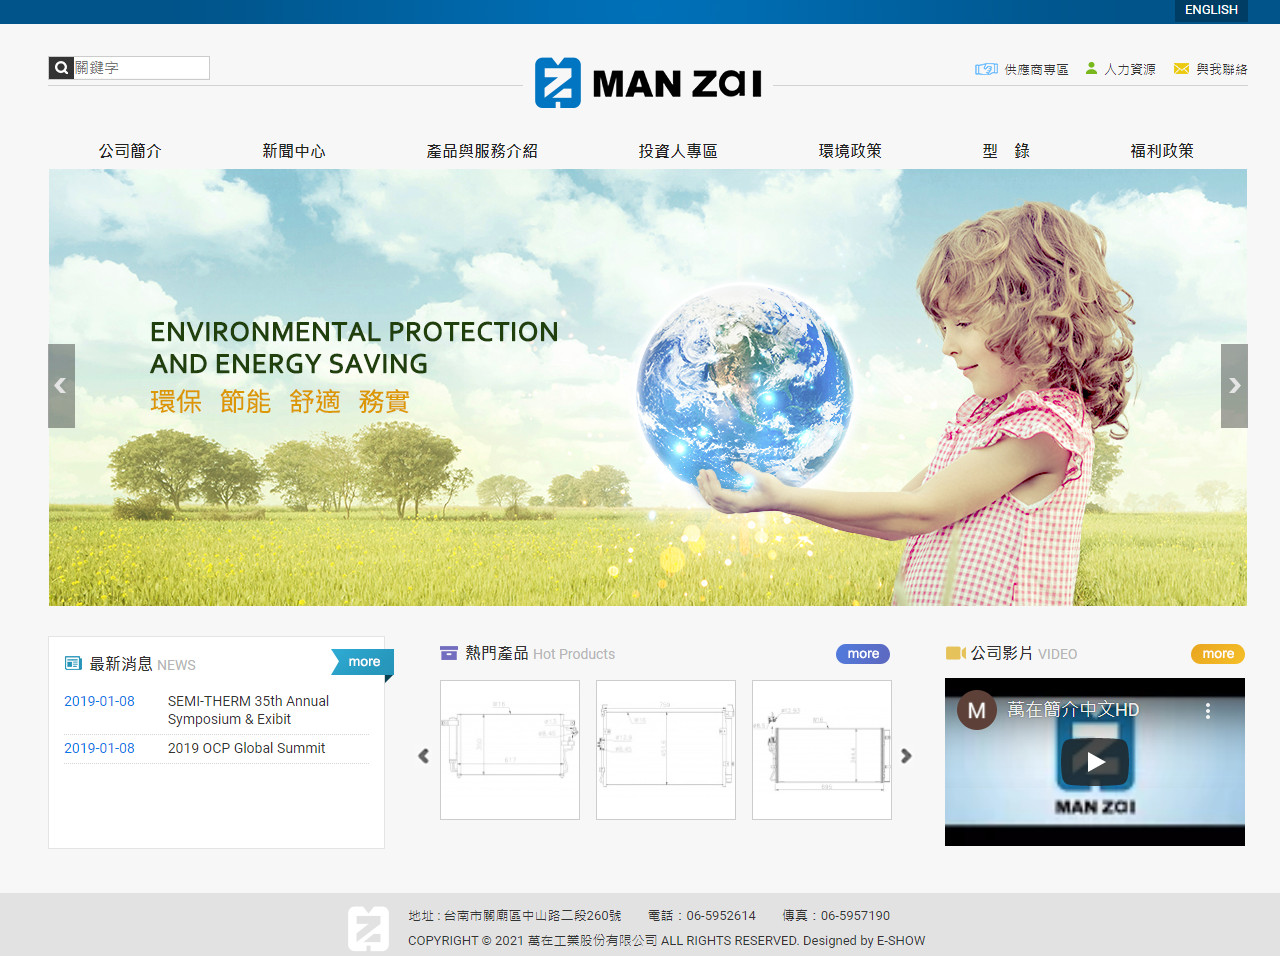 萬在工業股份有限公司 客製化網站設計
網站設計